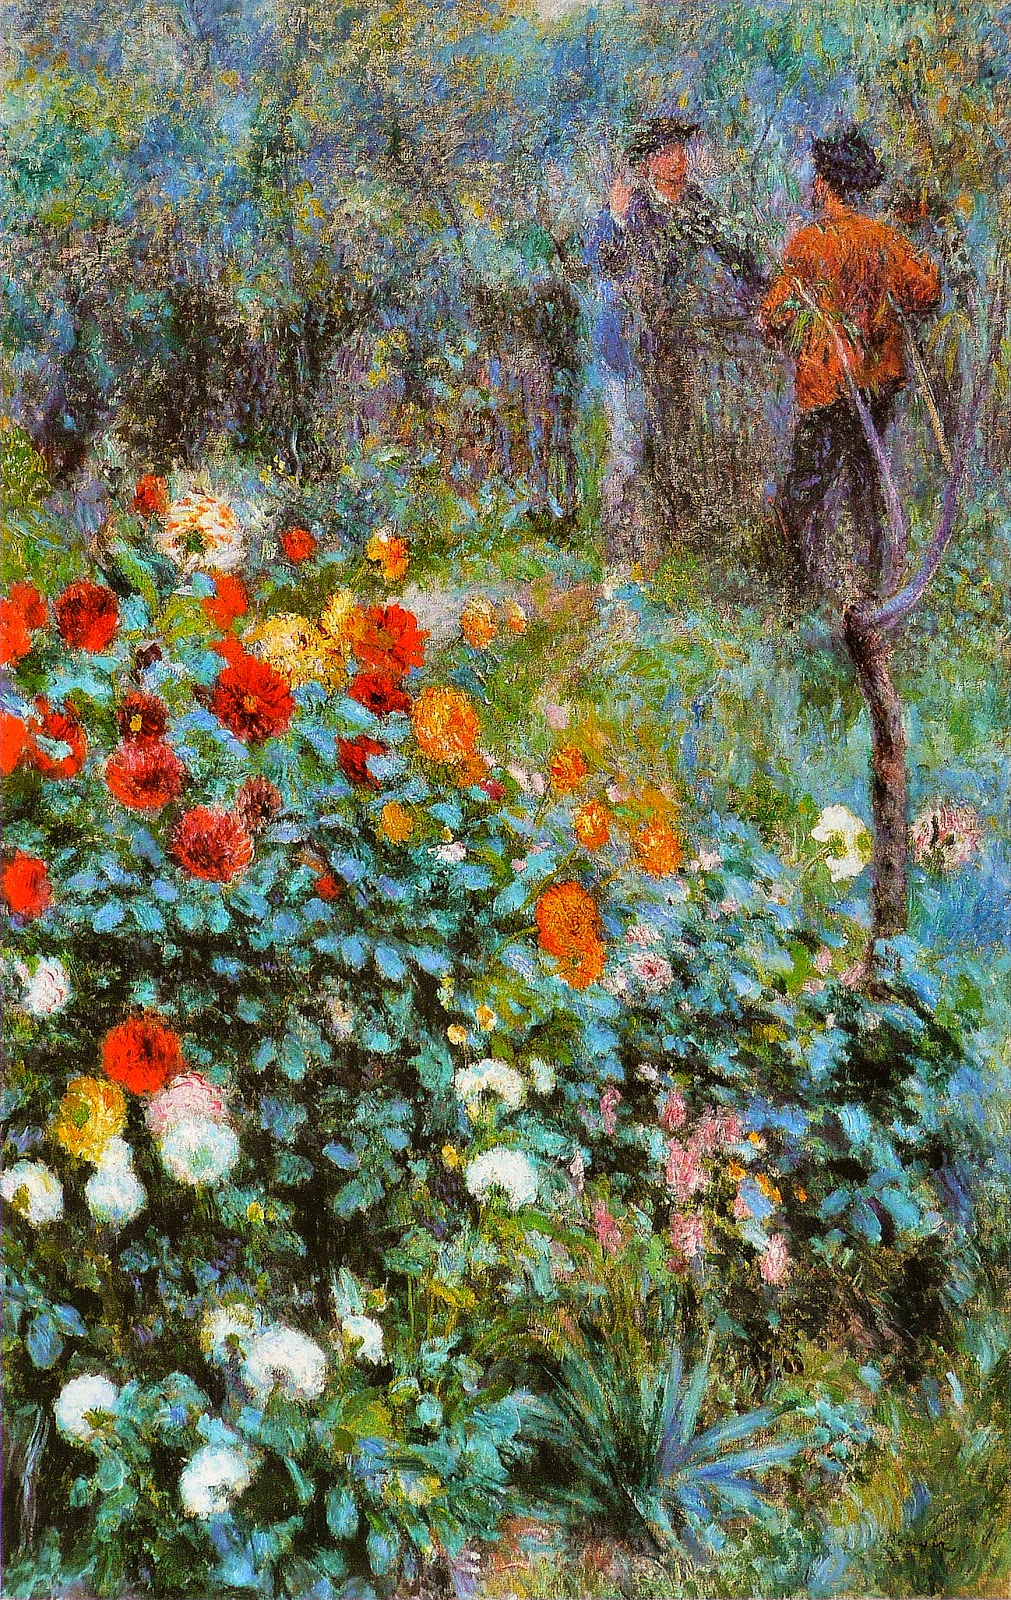 Pierre+Auguste+Renoir-1841-1-19 (131).jpg